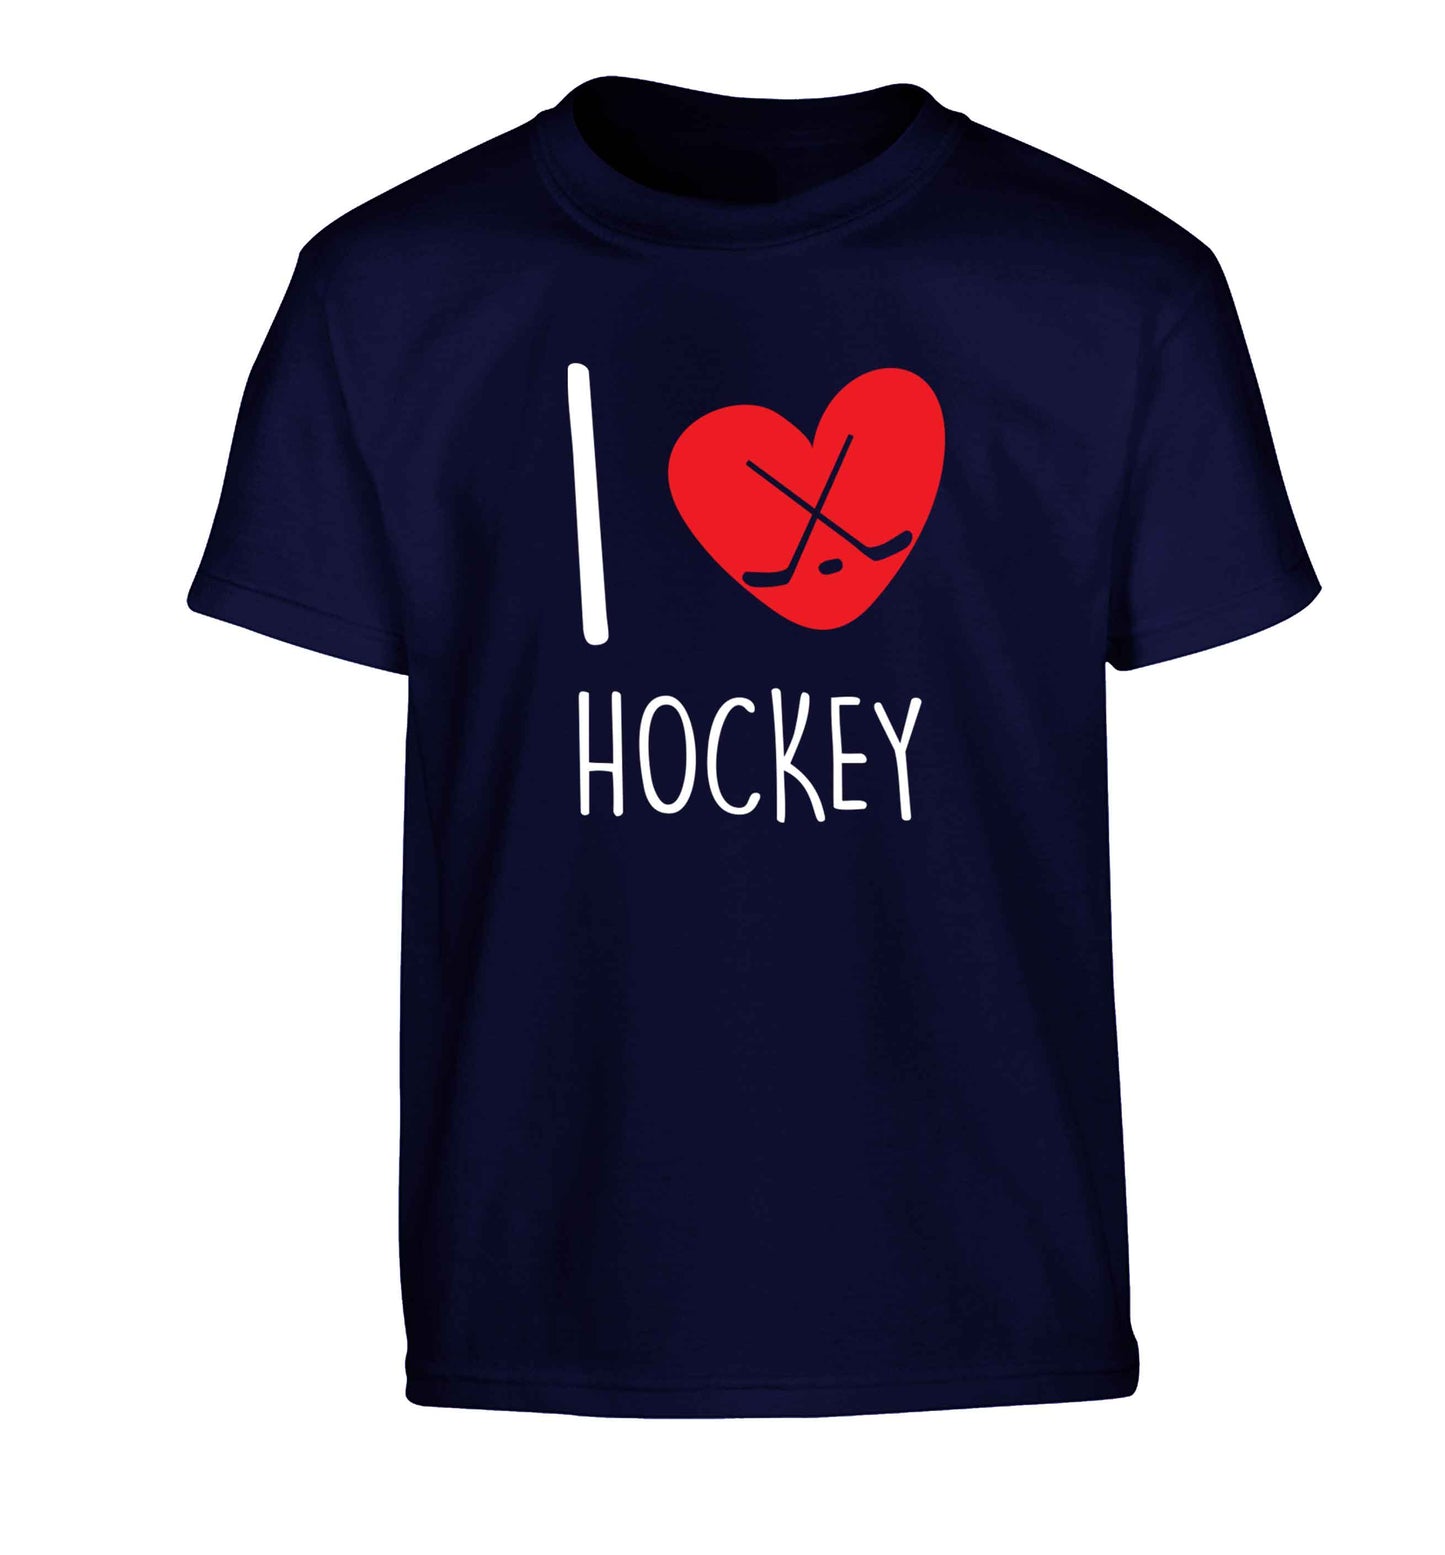 I love hockey Children's navy Tshirt 12-13 Years